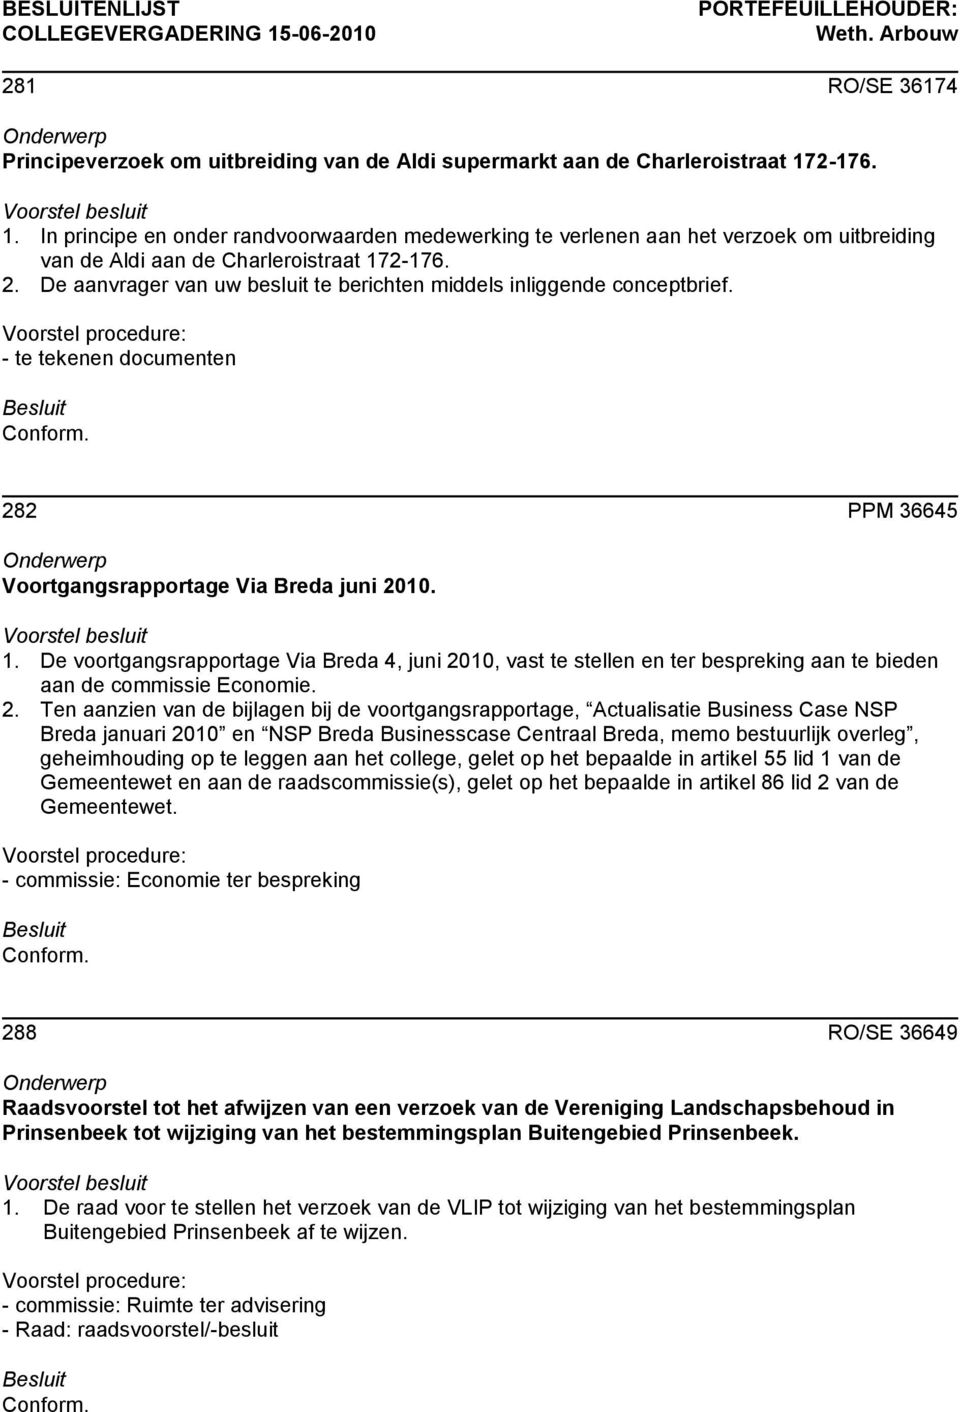 De aanvrager van uw besluit te berichten middels inliggende conceptbrief. 282 PPM 36645 Voortgangsrapportage Via Breda juni 2010. 1.